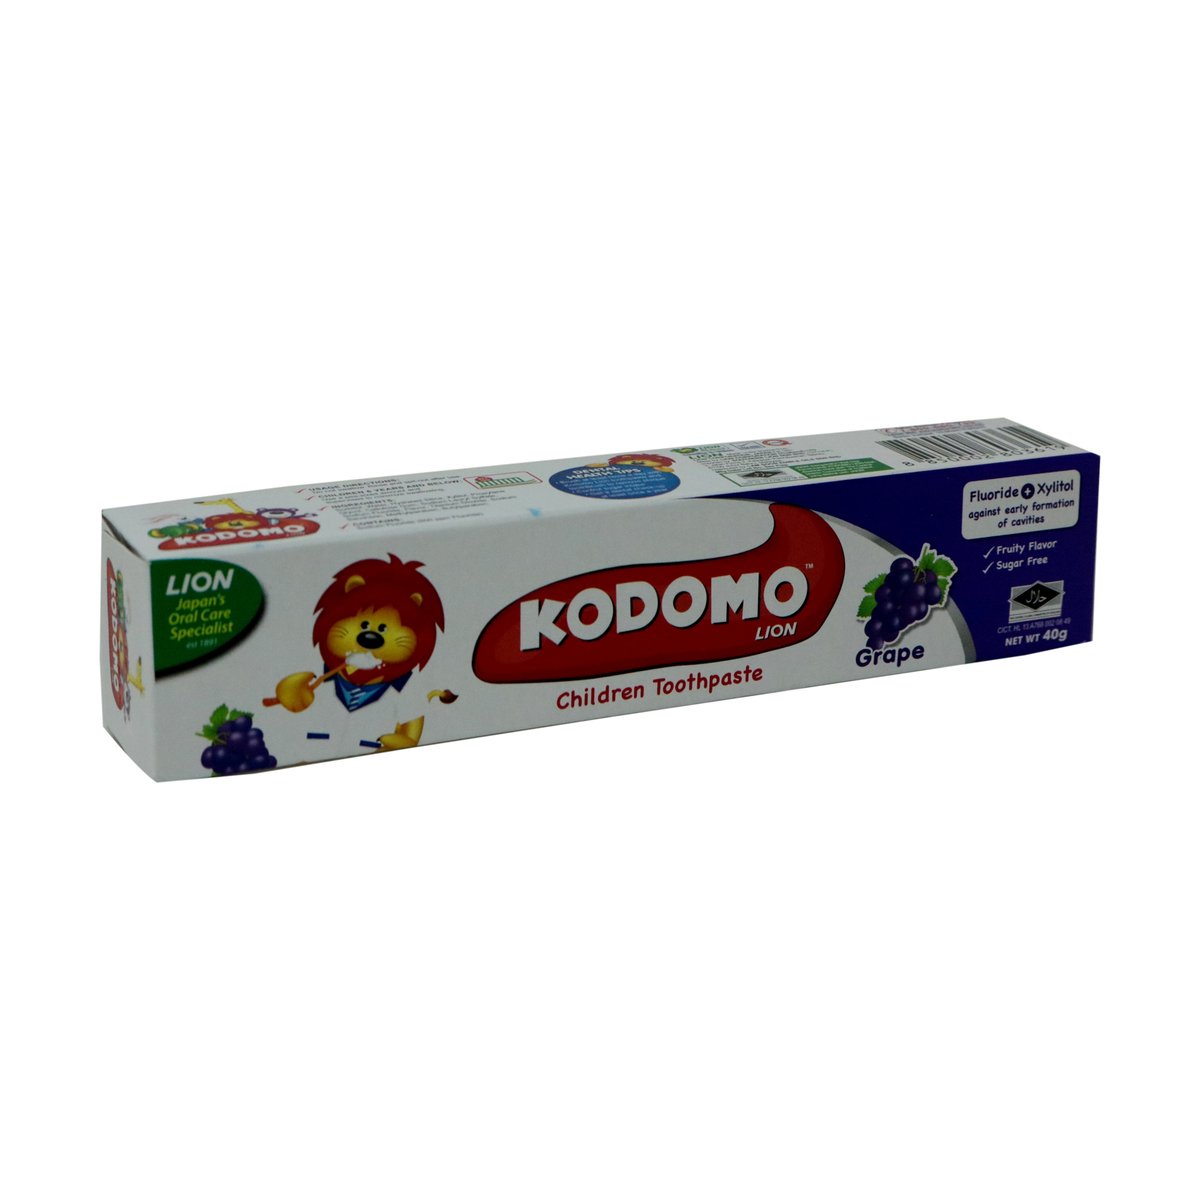 Kodomo Tooth Paste Grape 40g